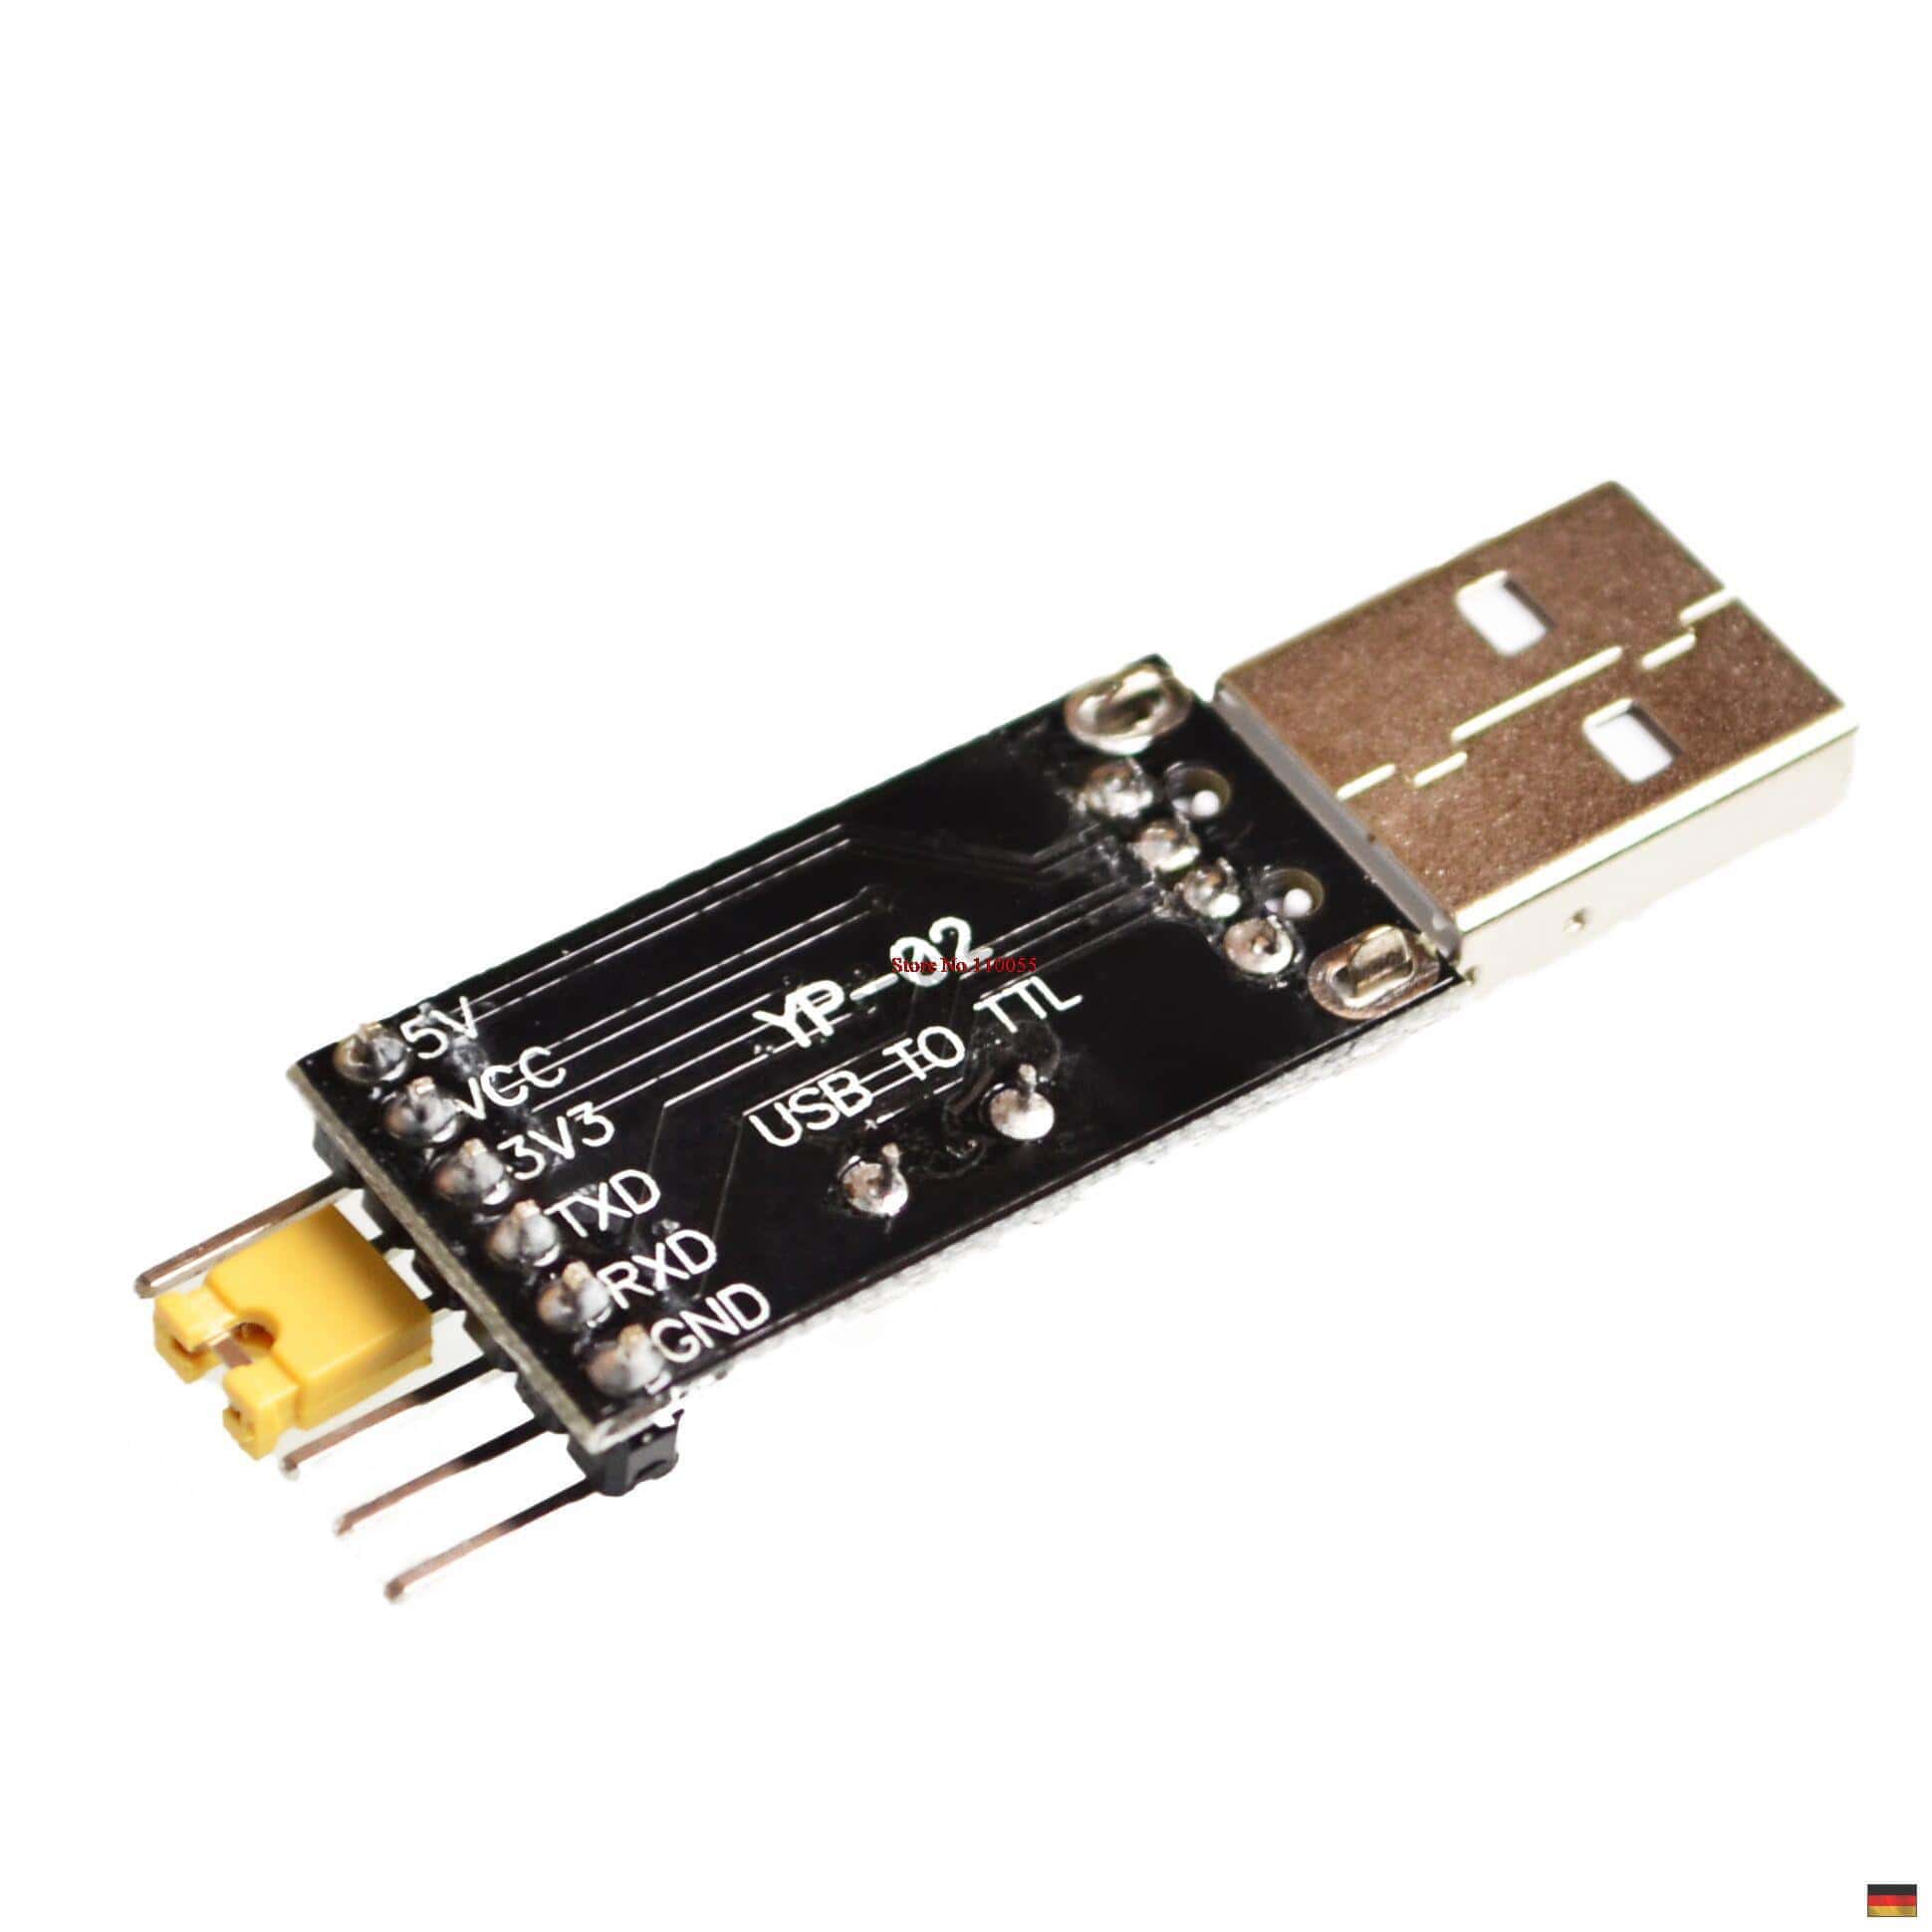 Zubehör Adapterkabel USB-TTL 5V mit Verbinder, 39,40 €